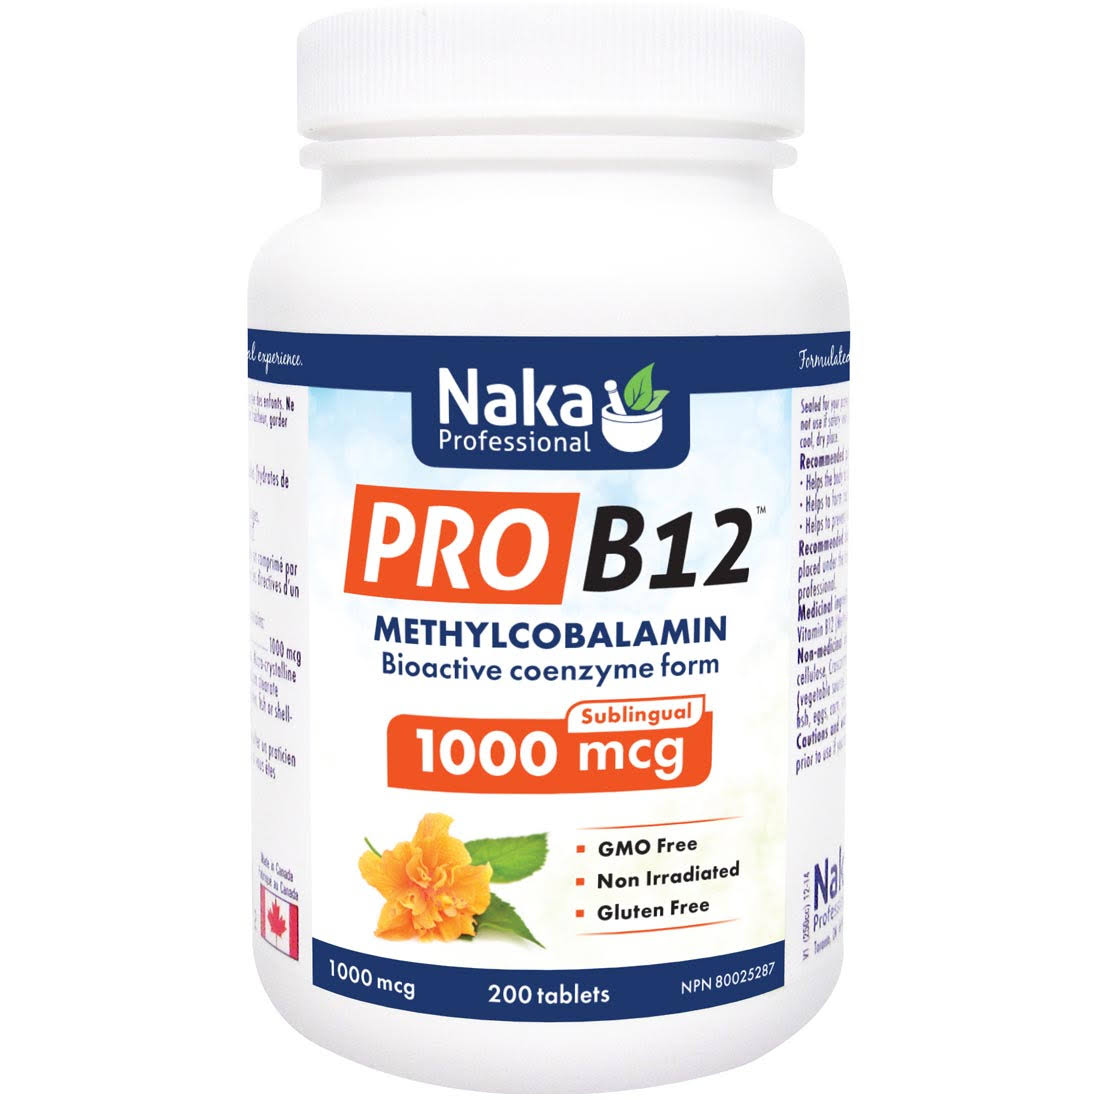 Naka Pro B12 Methylcobalamin 1000mcg